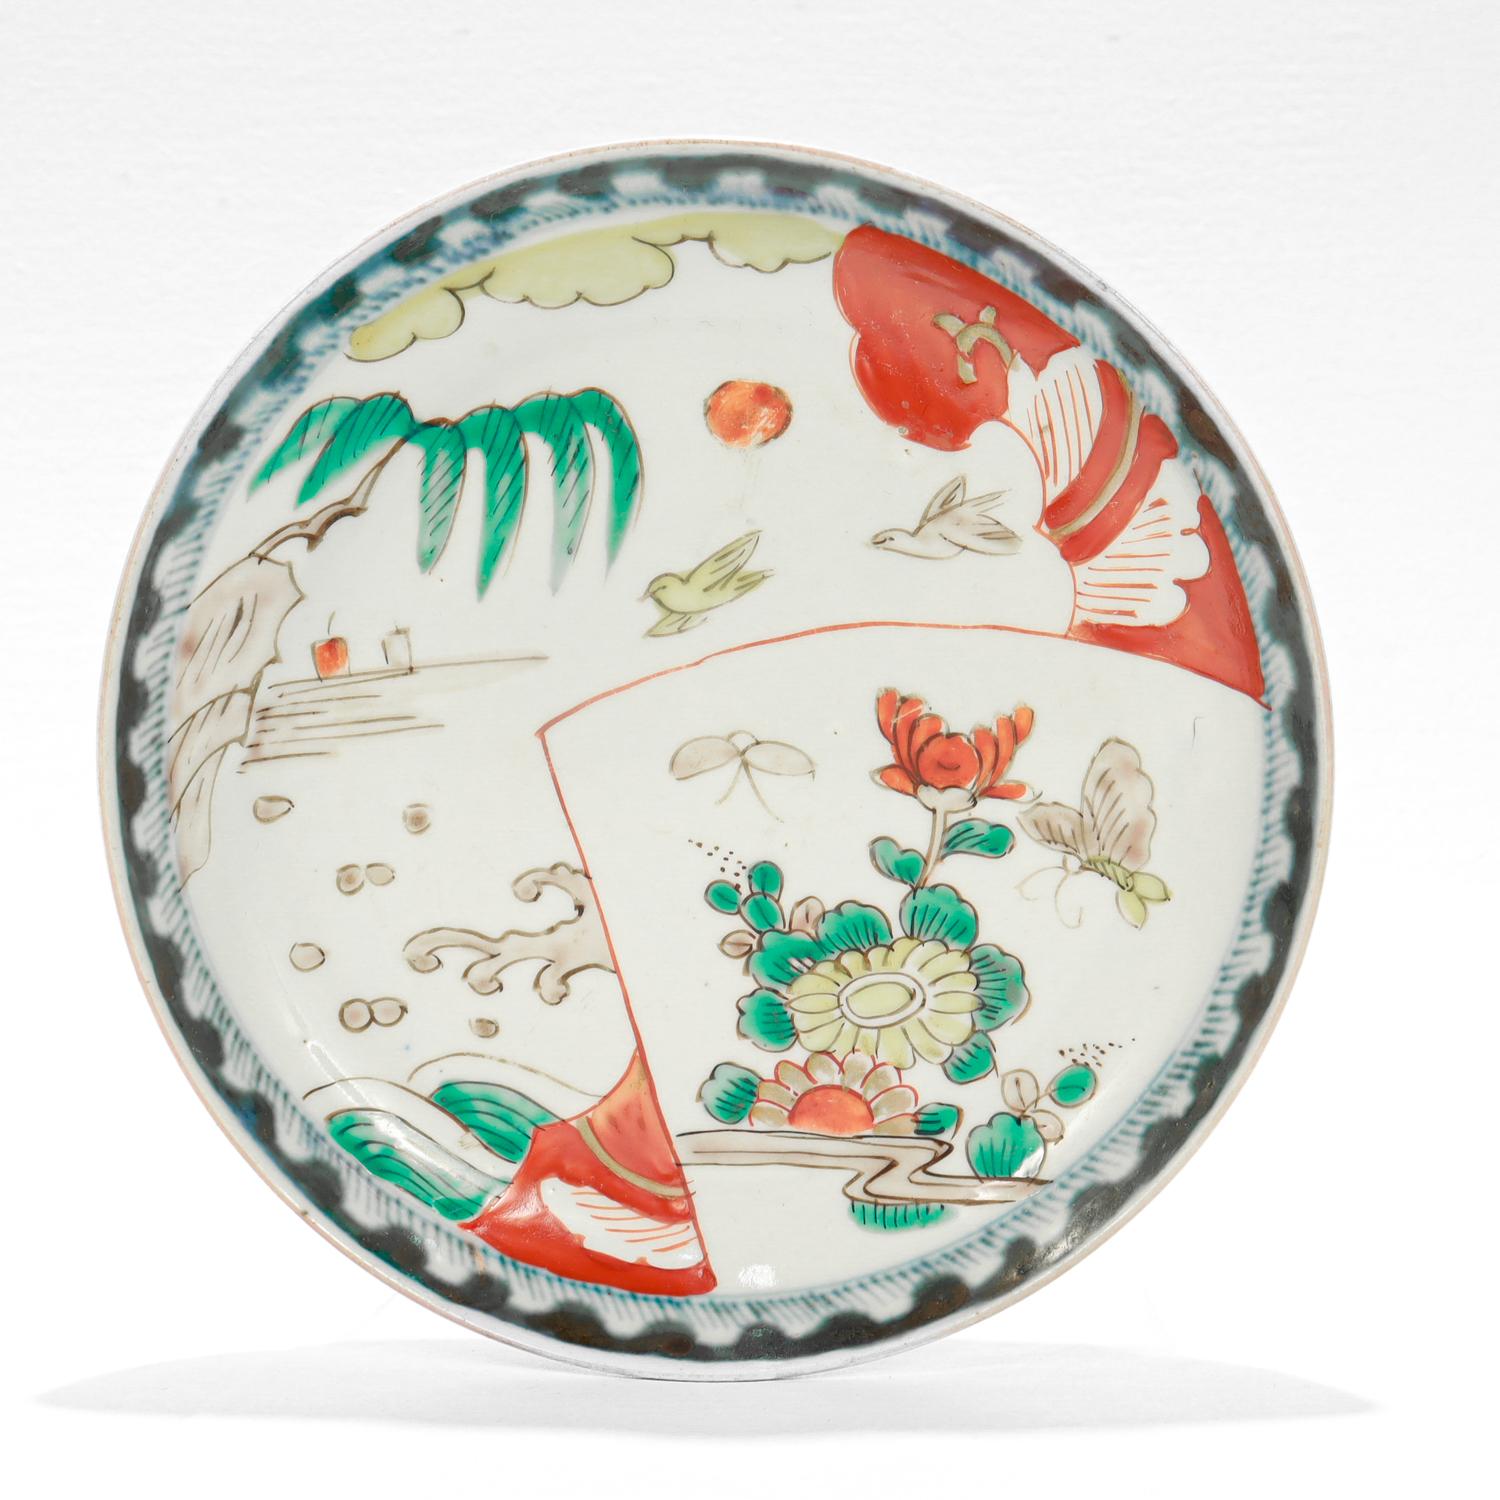 Ein feiner antiker japanischer (oder chinesischer) Porzellanteller.

Auf weißem Grund ist eine Meereslandschaft mit Blumen und Vögeln in Grün-, Rot-, Gelb- und Brauntönen abgebildet.

Der Rand ist mit einem blauen Unterglasurmuster